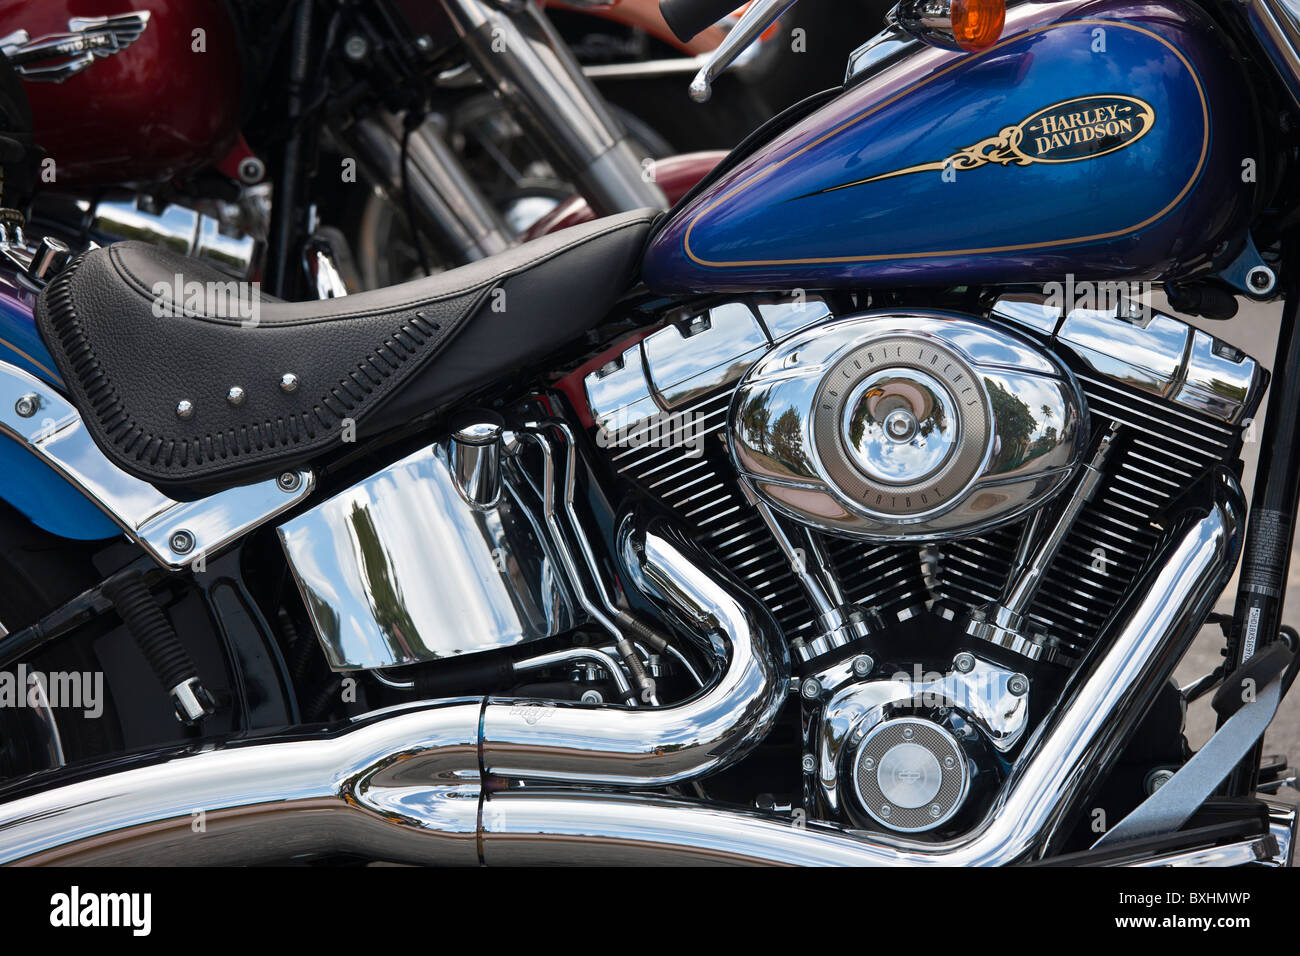 Harley Davidson Fatboy 90 pollici cubi motore in moto a South Beach, Miami, Florida, Stati Uniti d'America Foto Stock